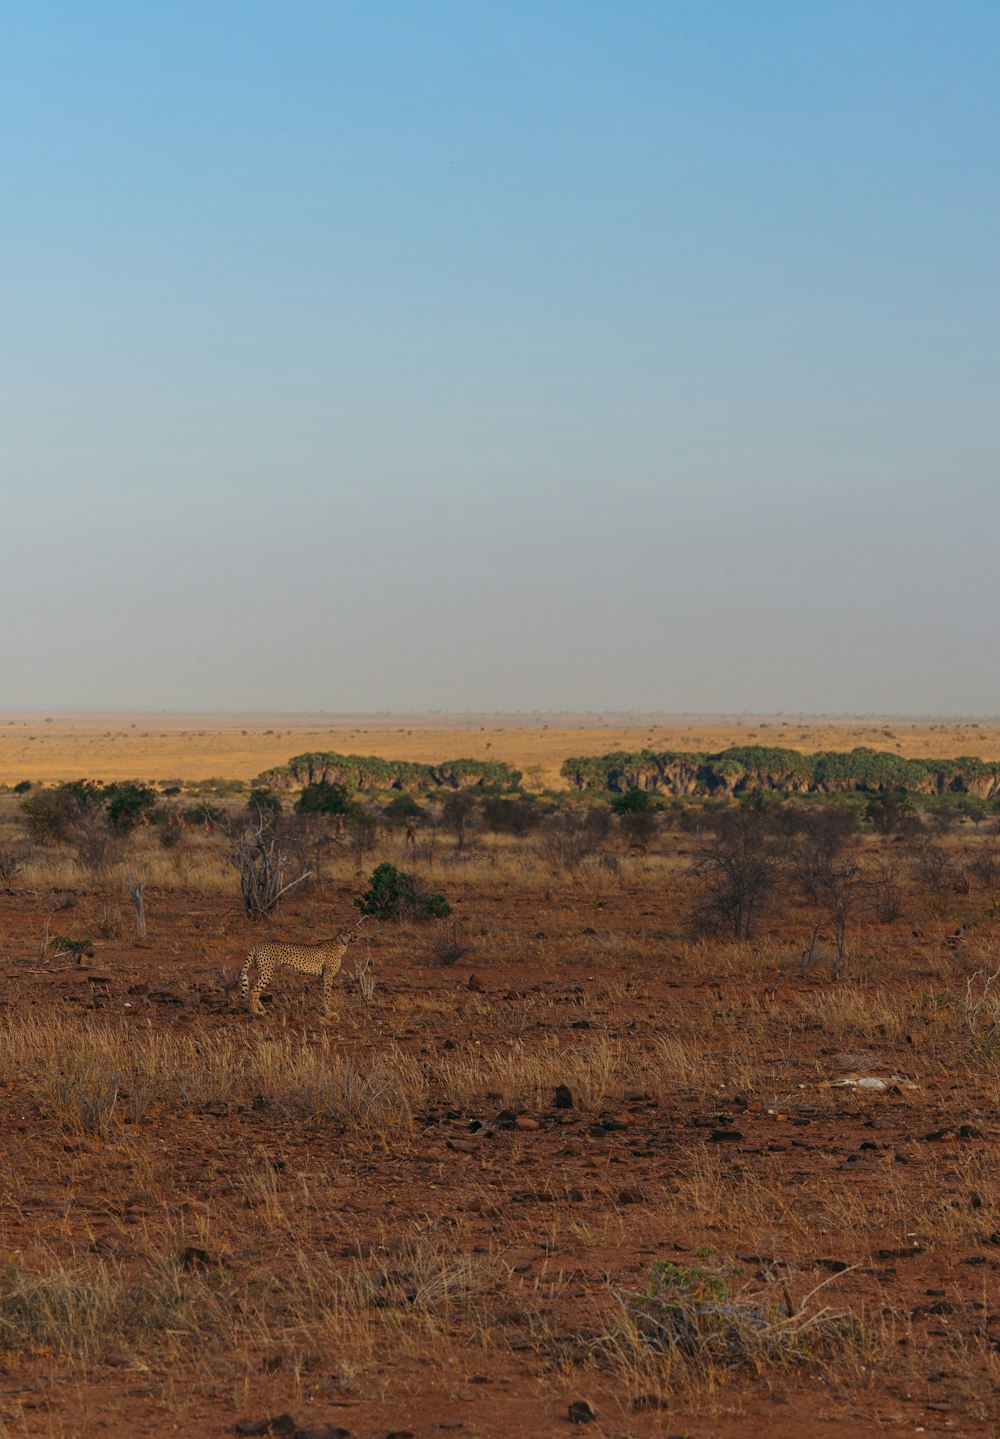 uma girafa solitária de pé no meio de um campo